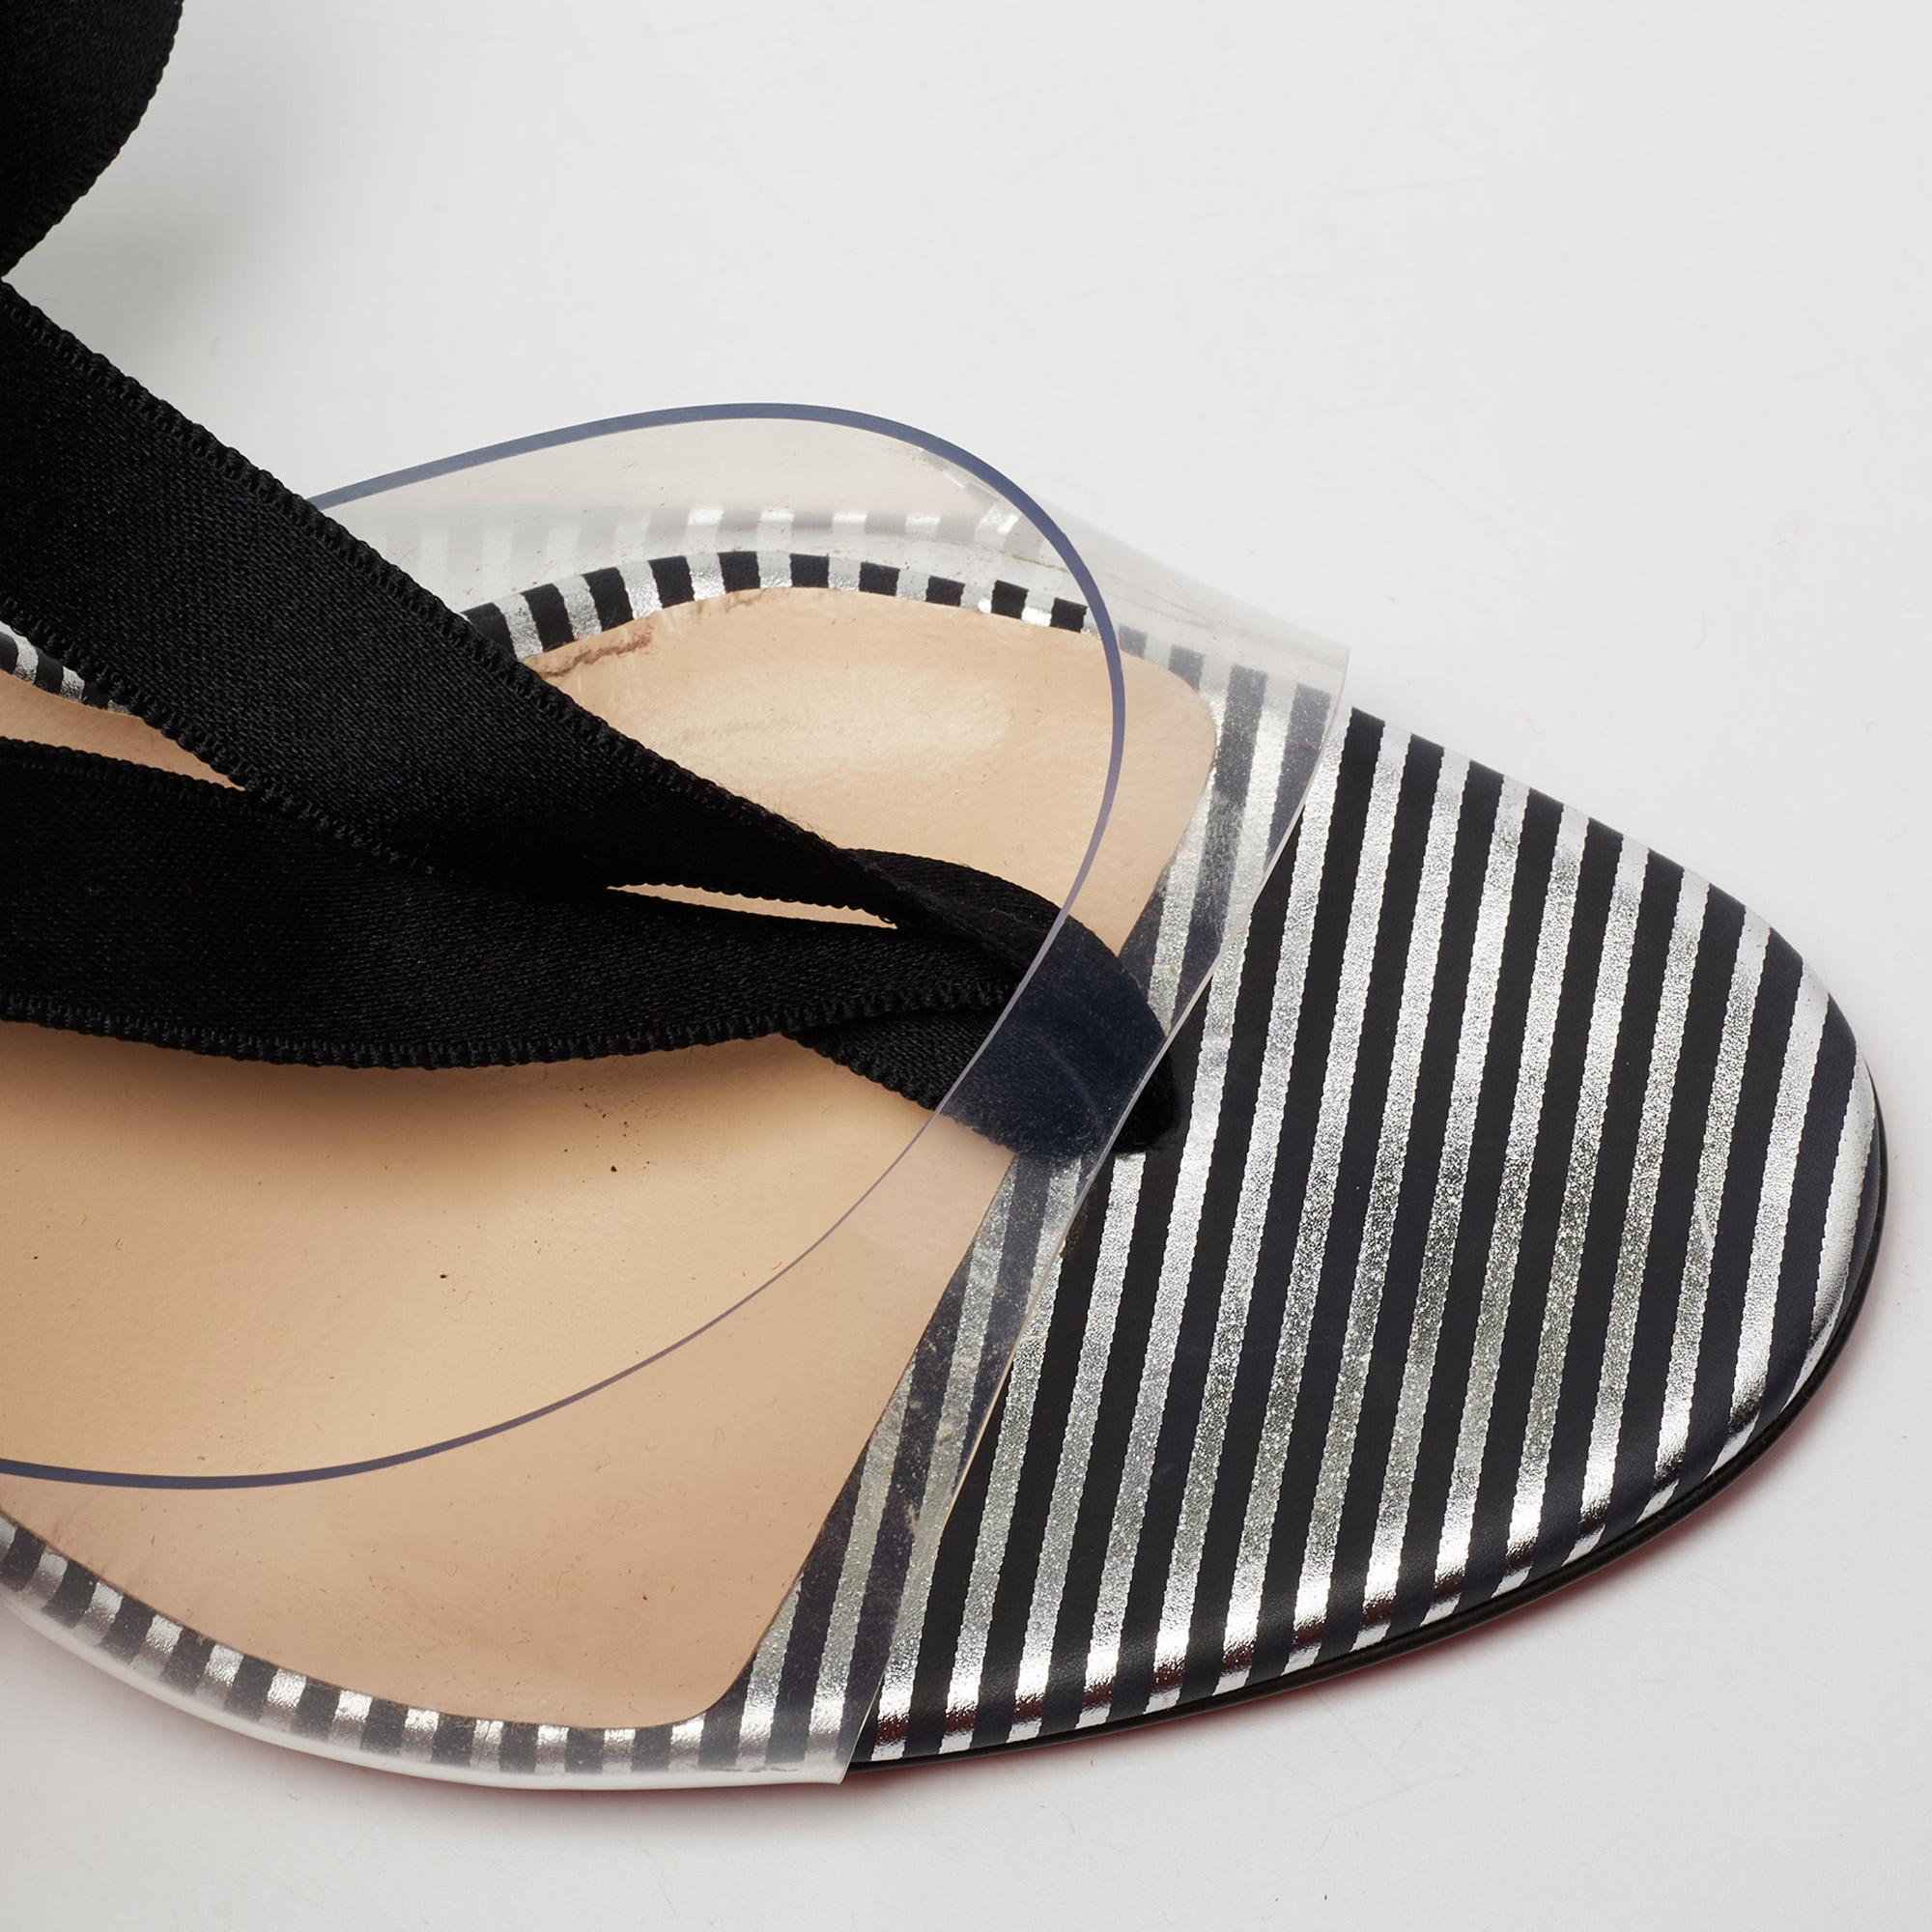 Christian Louboutin Transparent PVC Marie Paillette Tie Up Sandals Size 38 1